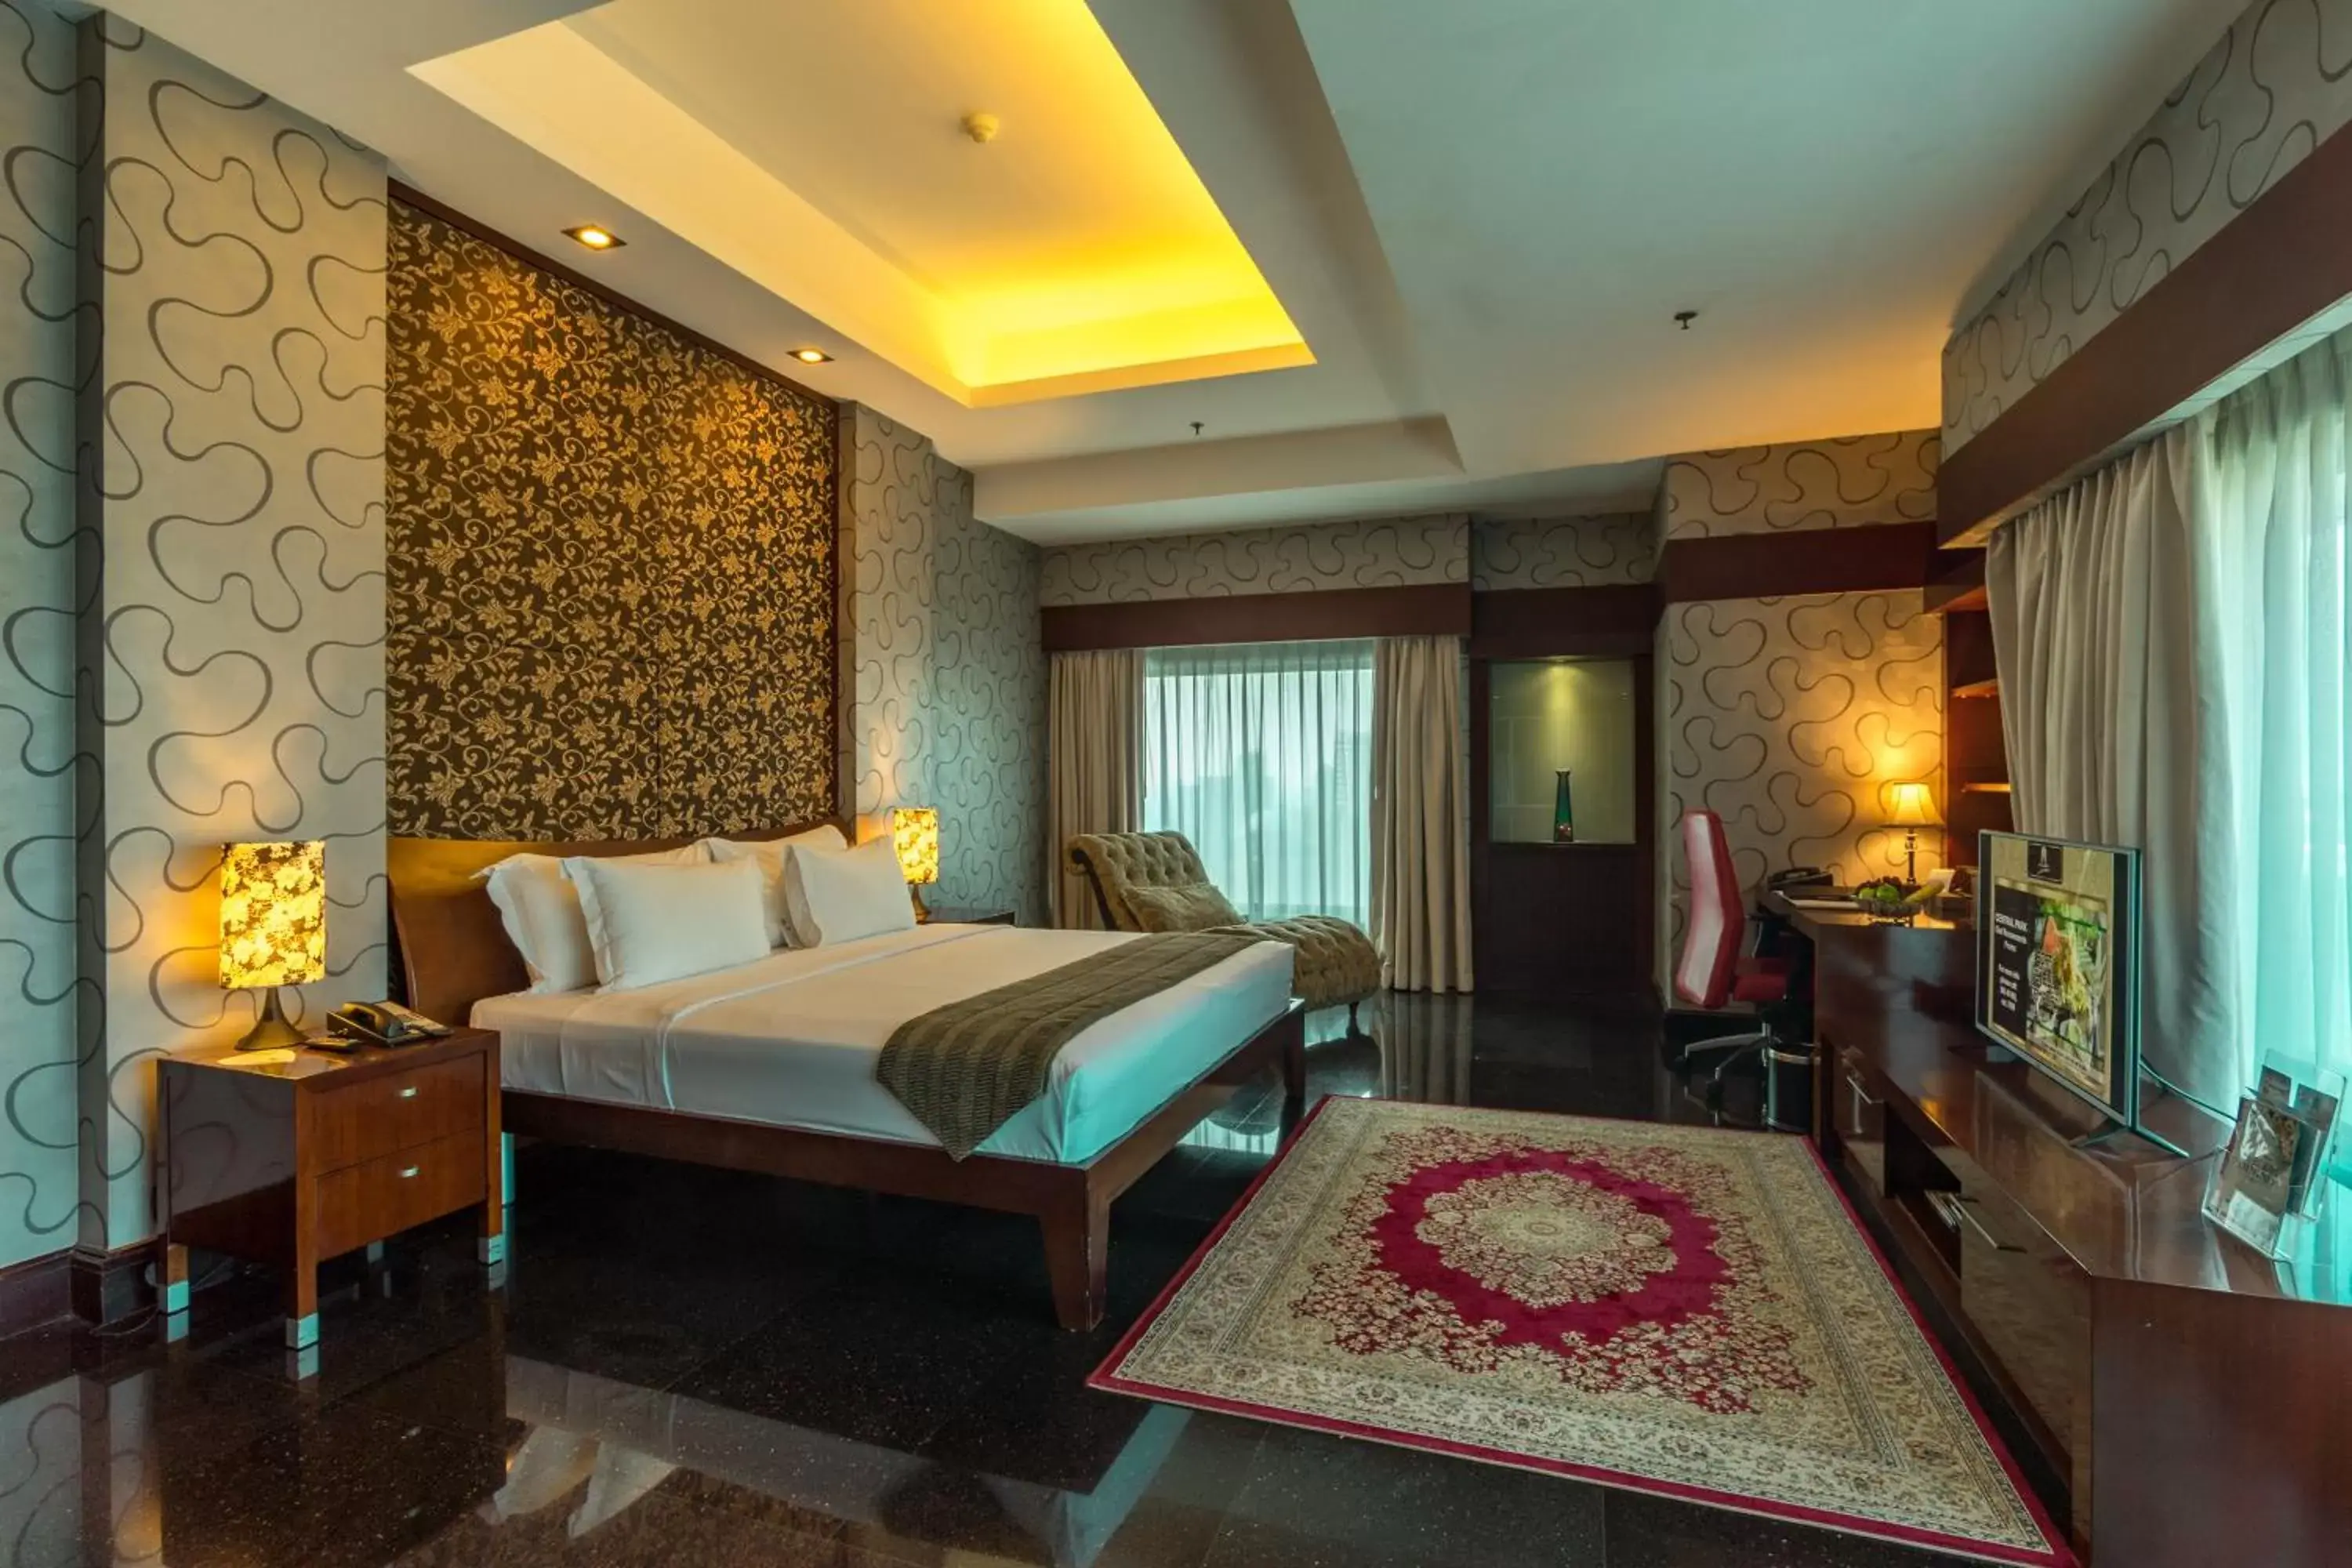 Bed in Manhattan Hotel Jakarta